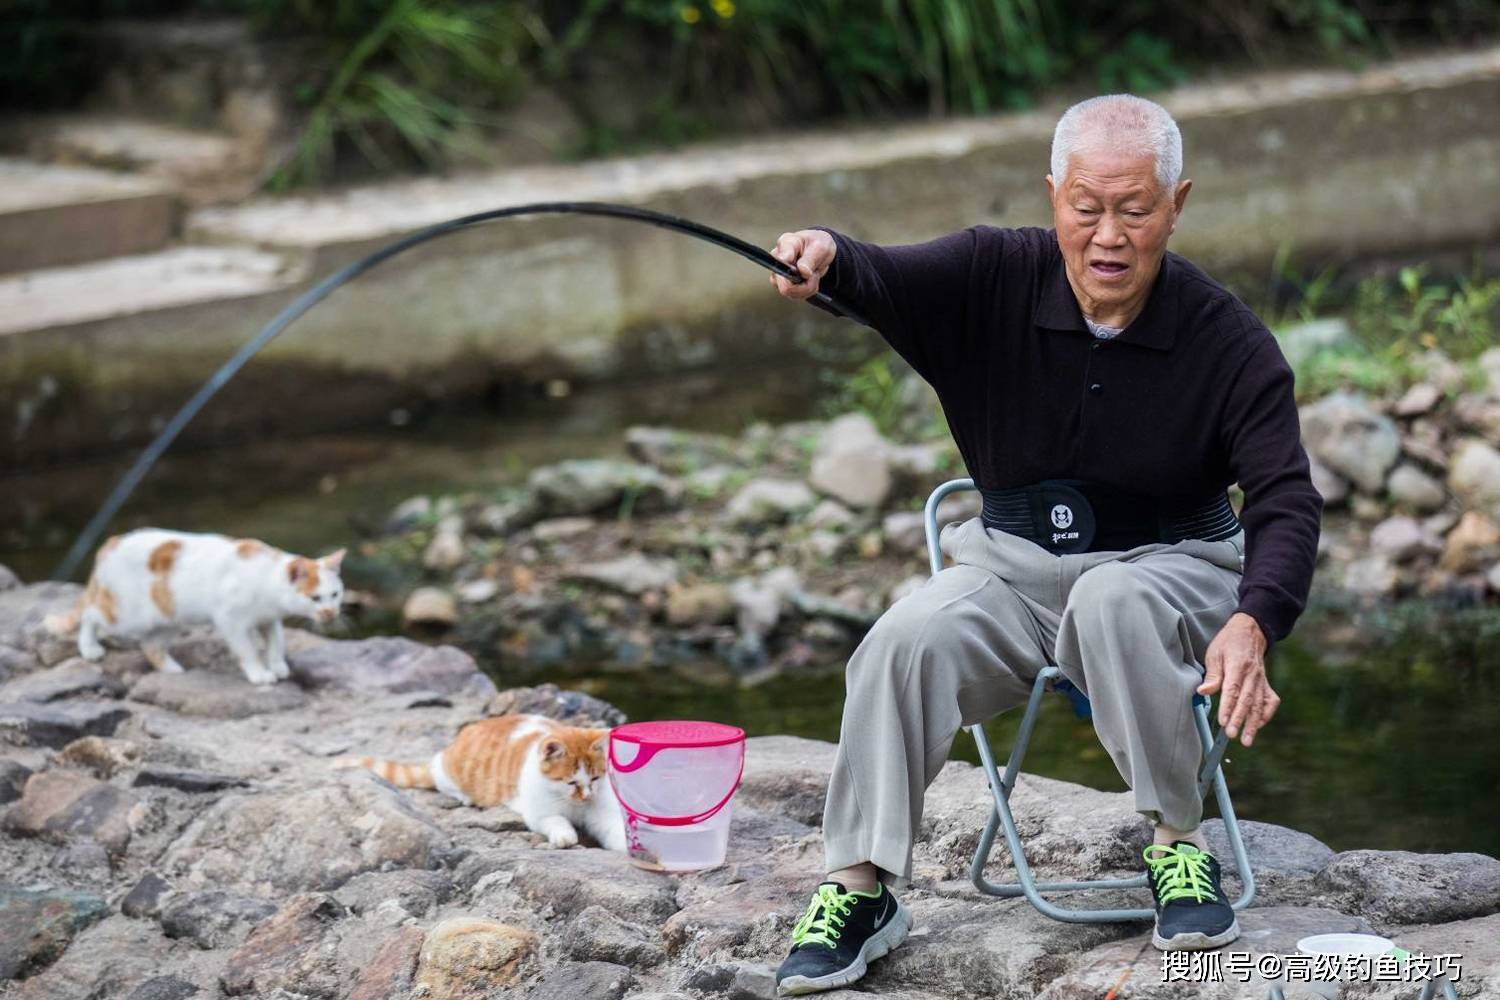 为什么老年人喜欢通过钓鱼来养生钓鱼对老年人的益处颇多